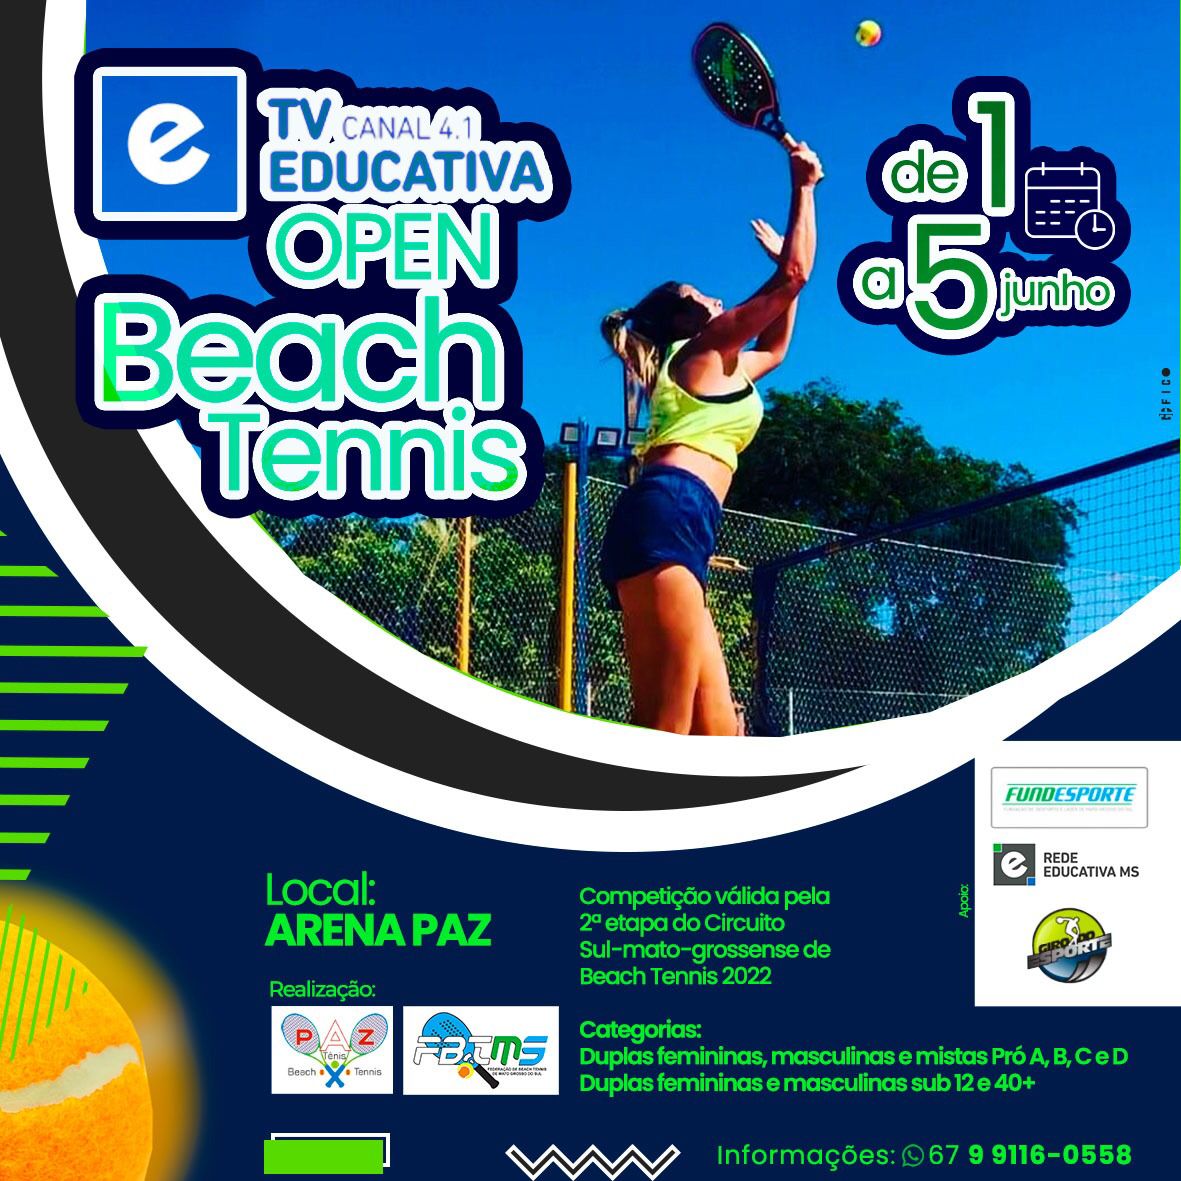 Com apoio da Fundesporte, TVE Open de Beach Tennis abre inscrições